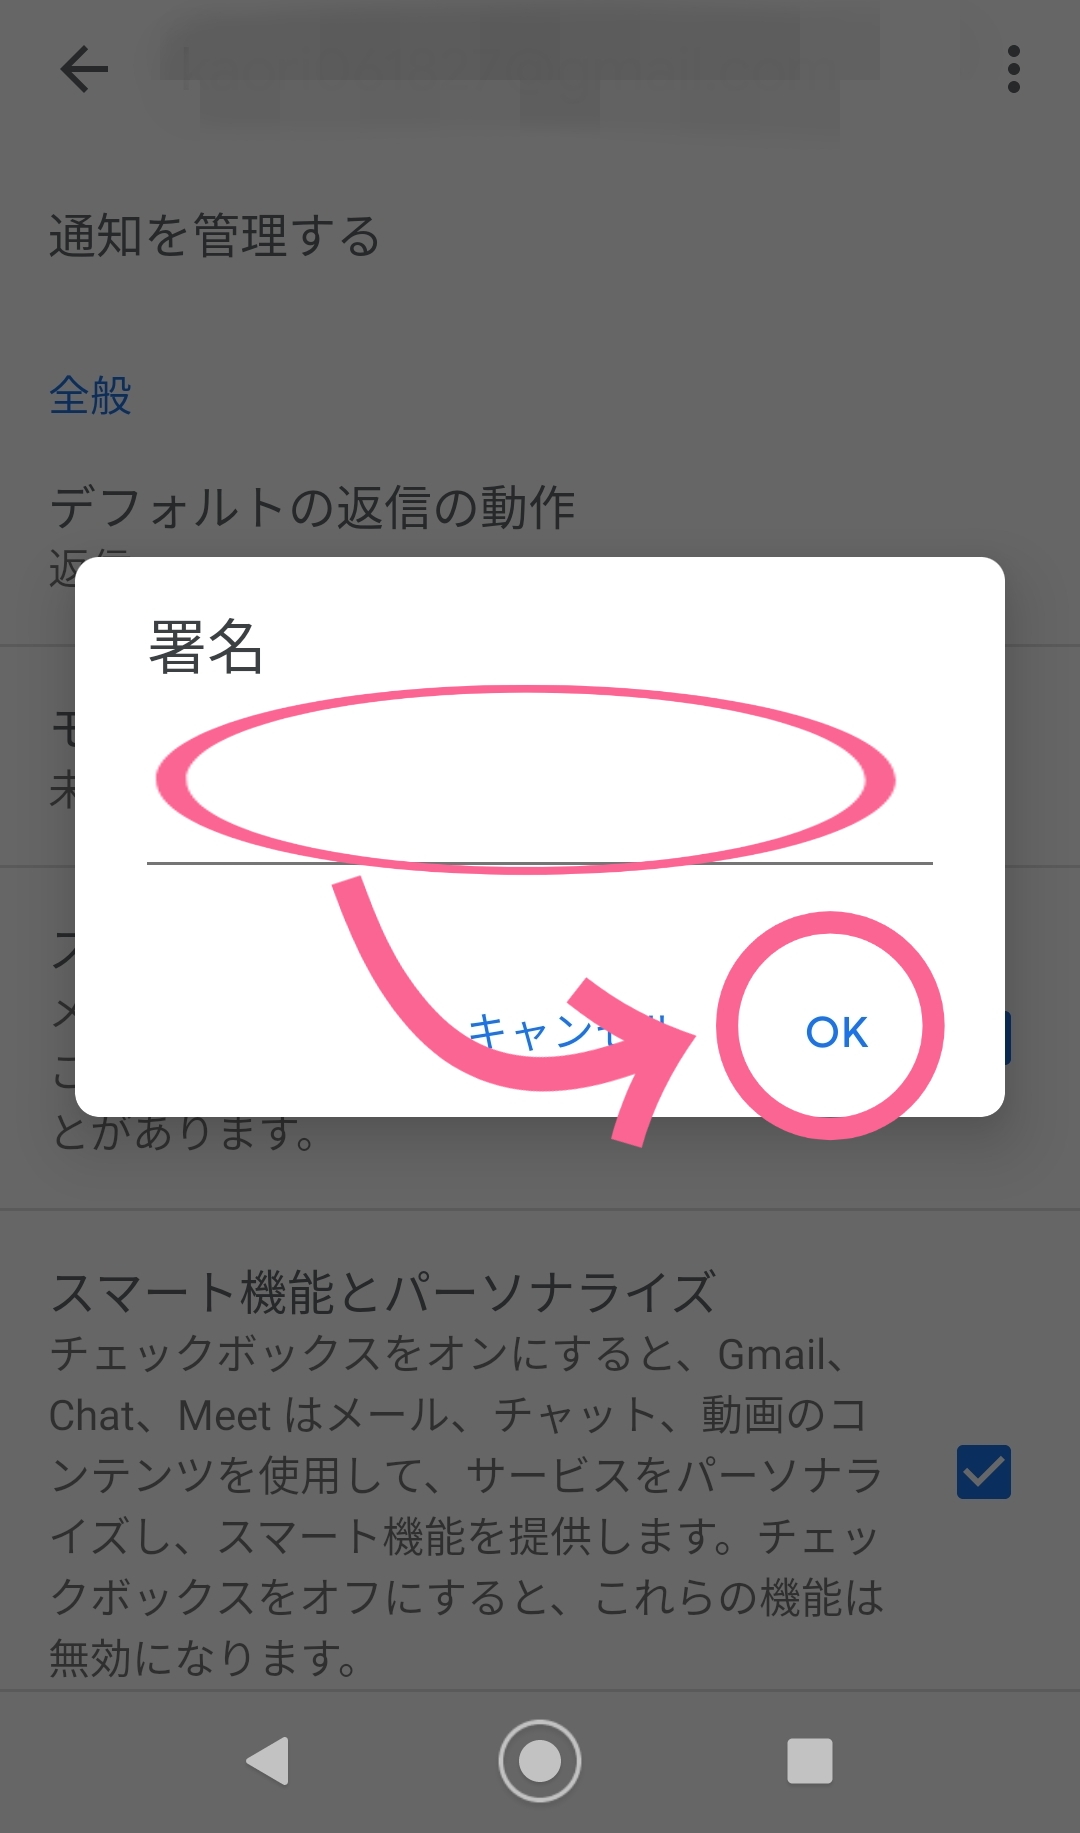 Gmail　アプリ　Android　テキスト　入力　OK　タップ　完了